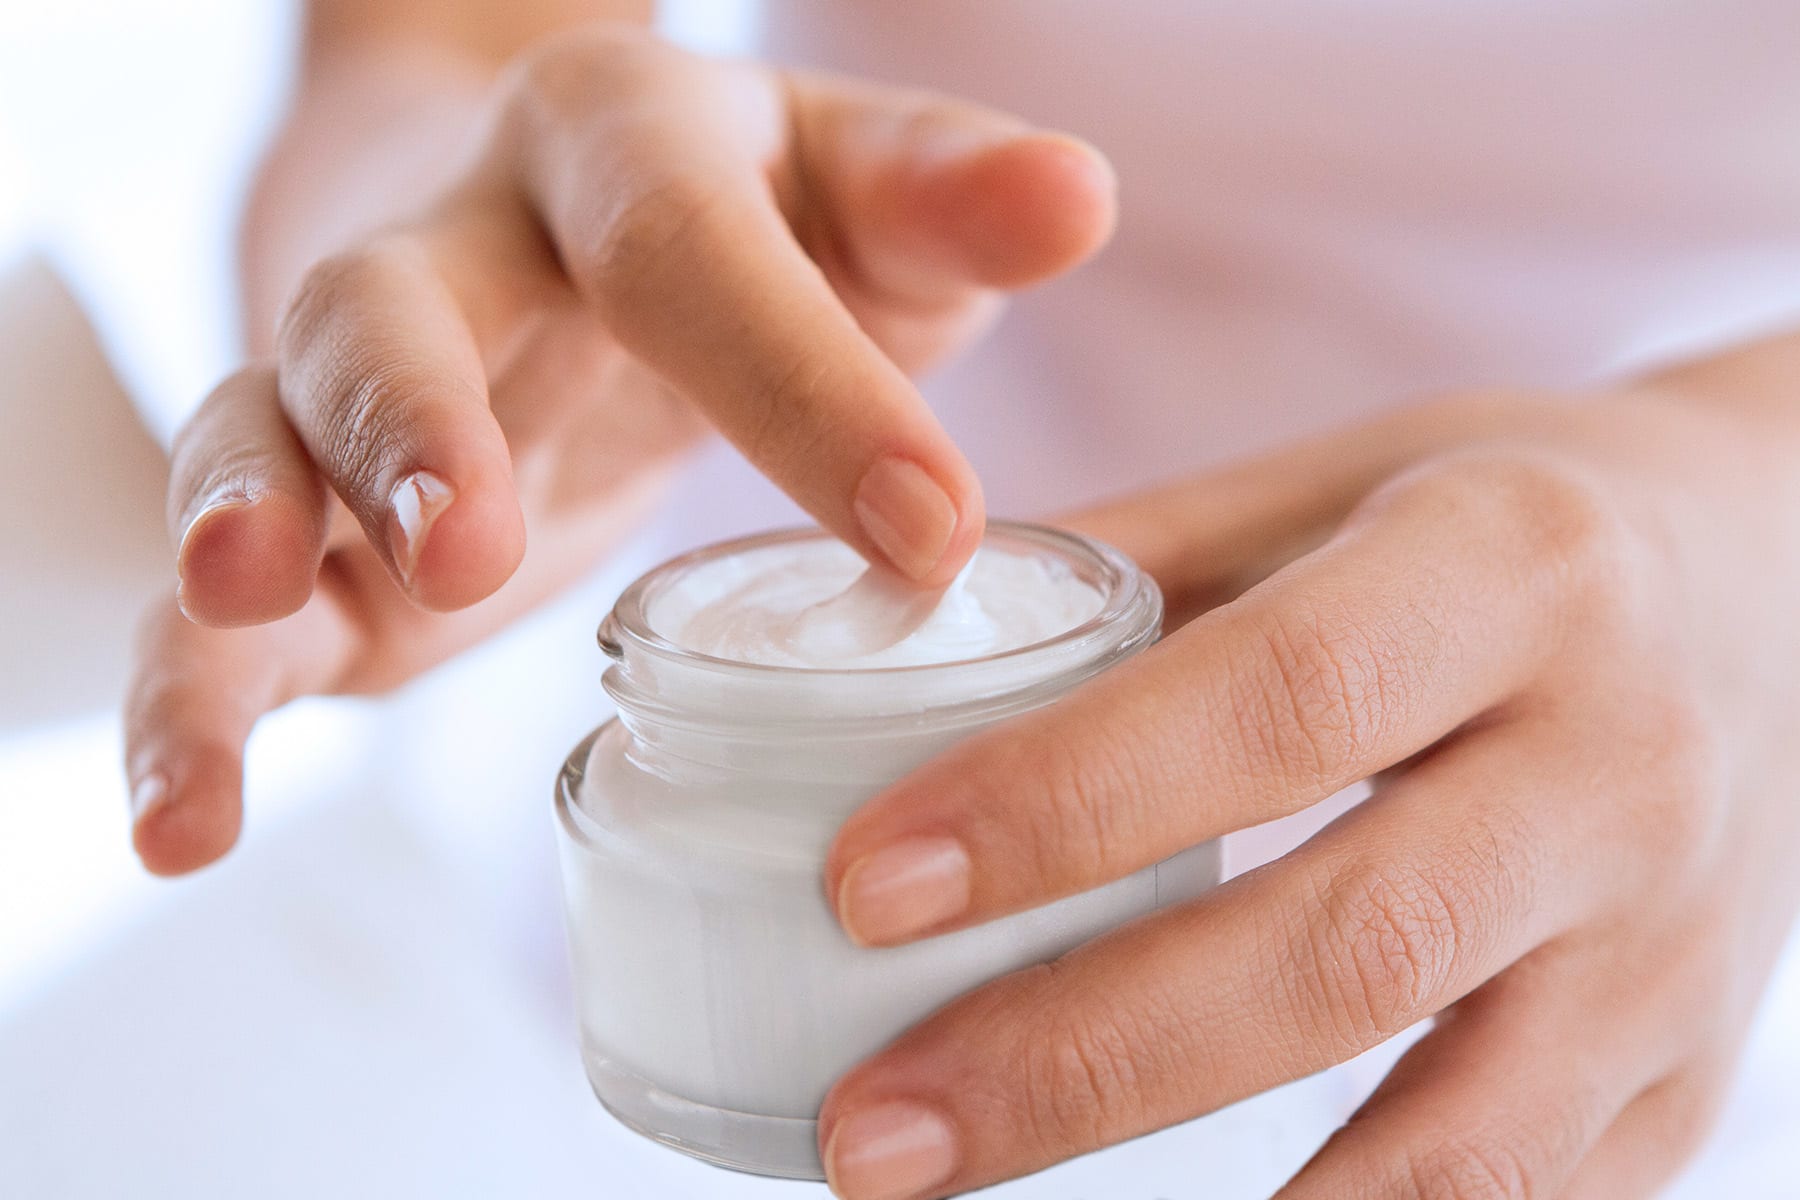 Skin care formulations